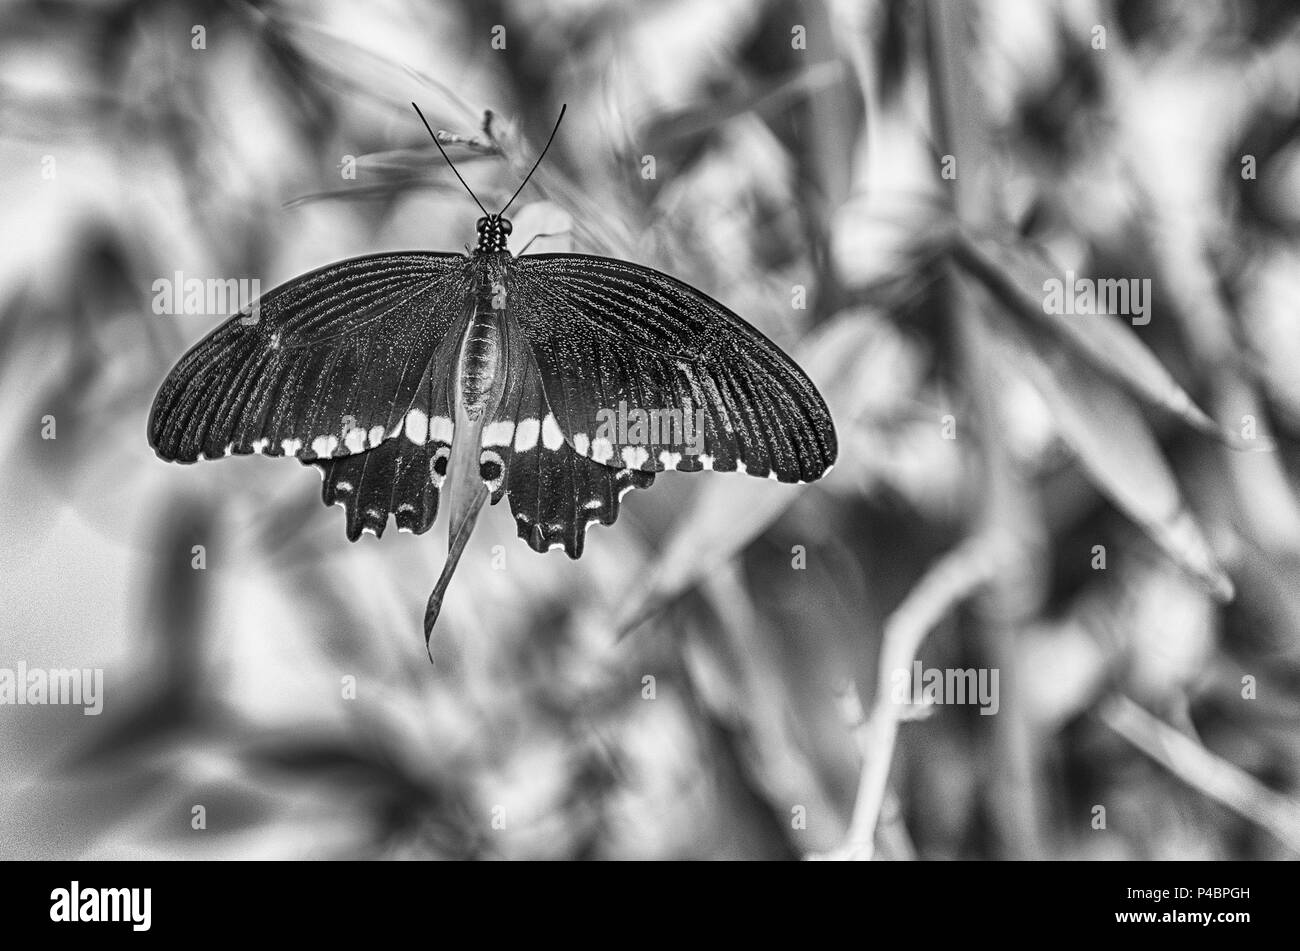 Papilio polytes, aka rcommon Mormon est un papillon tropical. Ici montré en étant debout sur une feuille Banque D'Images